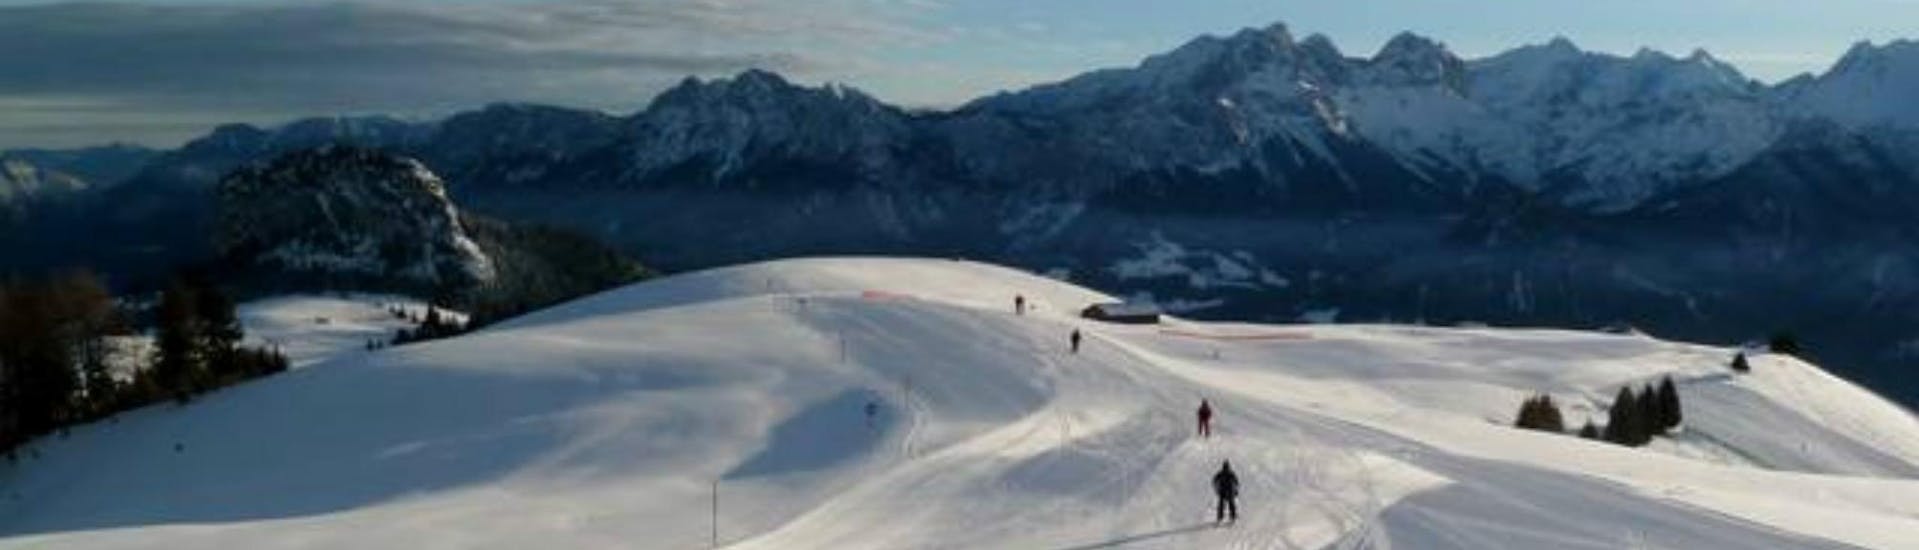 Adultos y niños esquiando en la estación de esquí de Lofer.